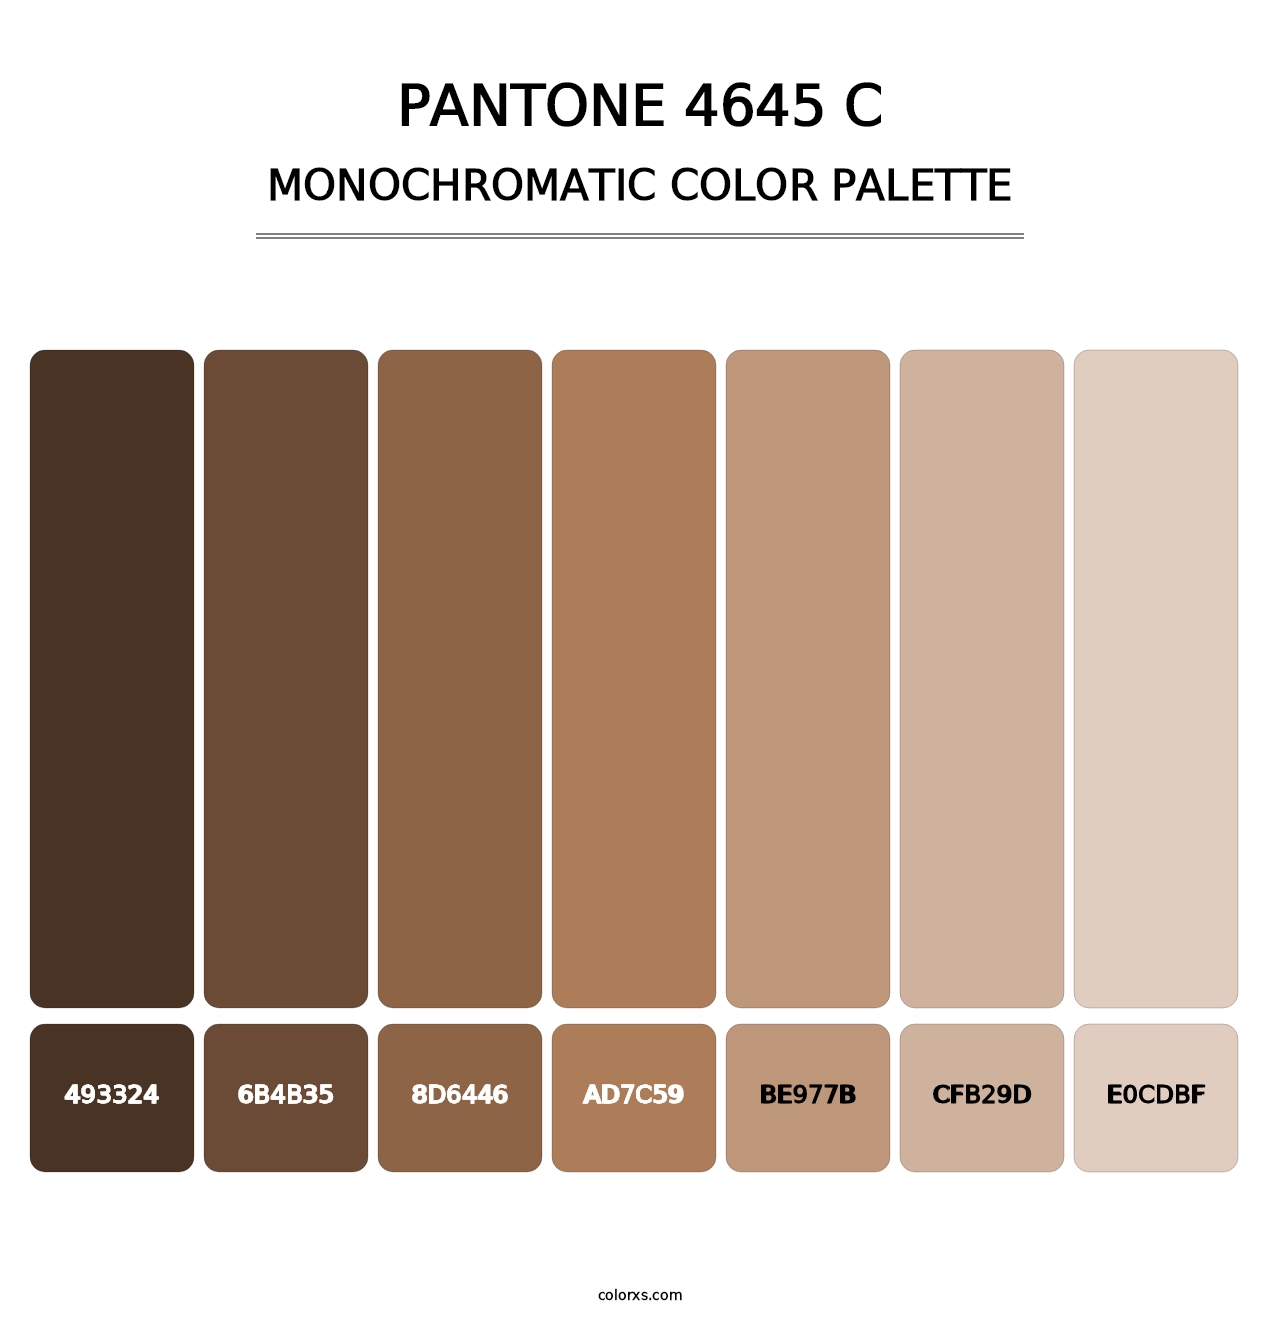 PANTONE 4645 C - Monochromatic Color Palette